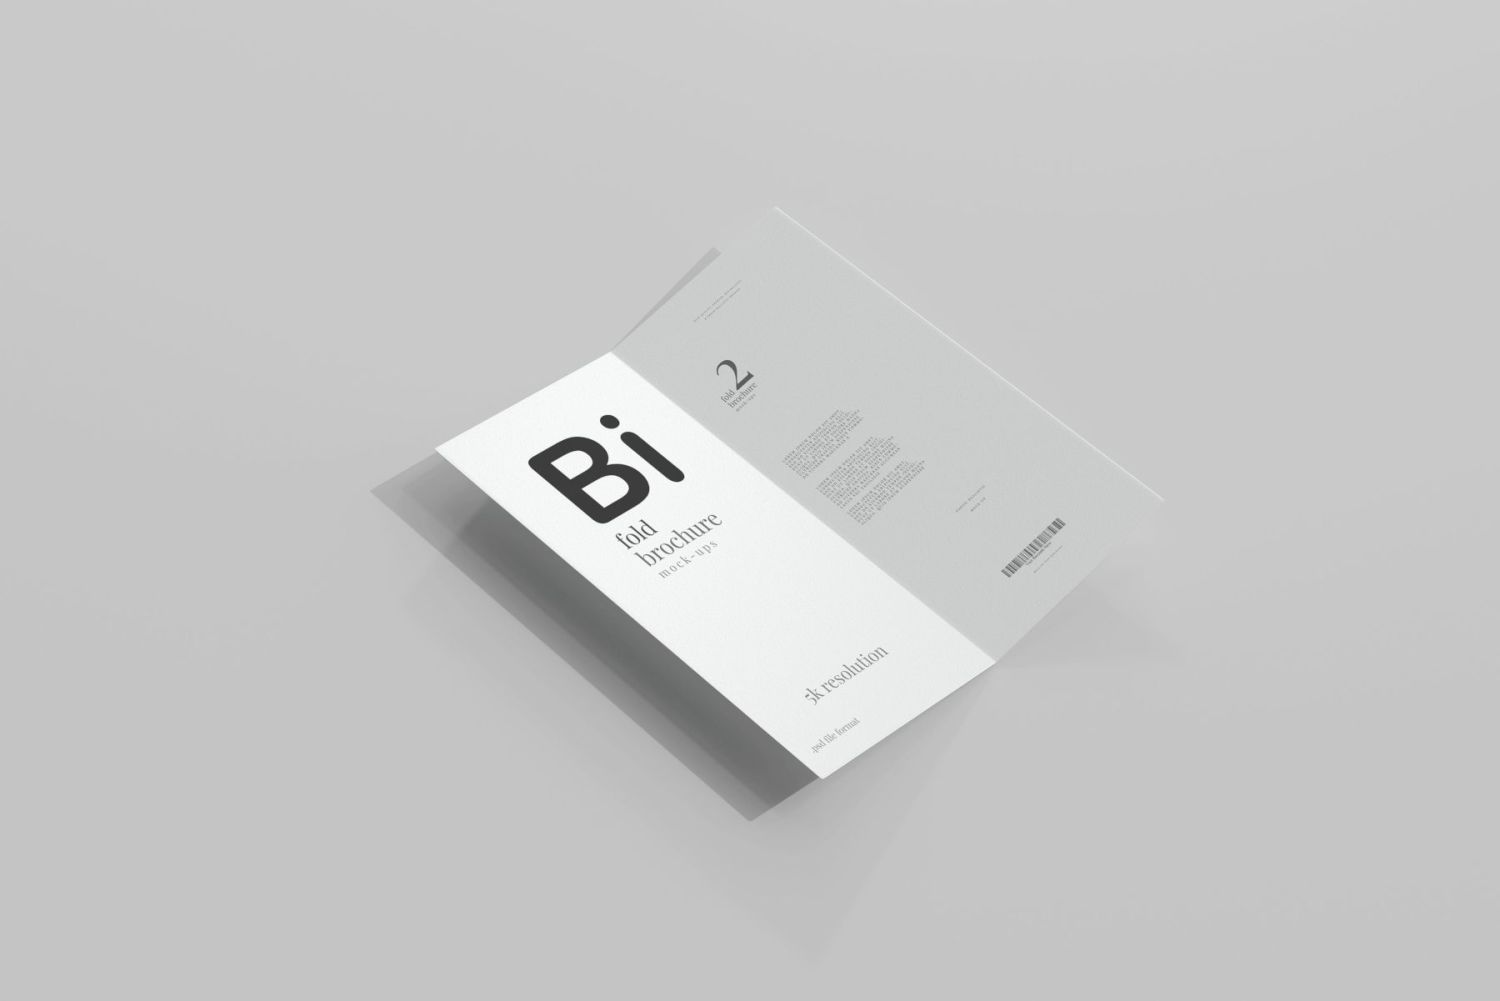 DL 尺寸双折页宣传册样机 Bi Fold DL Brochure Mockups插图4